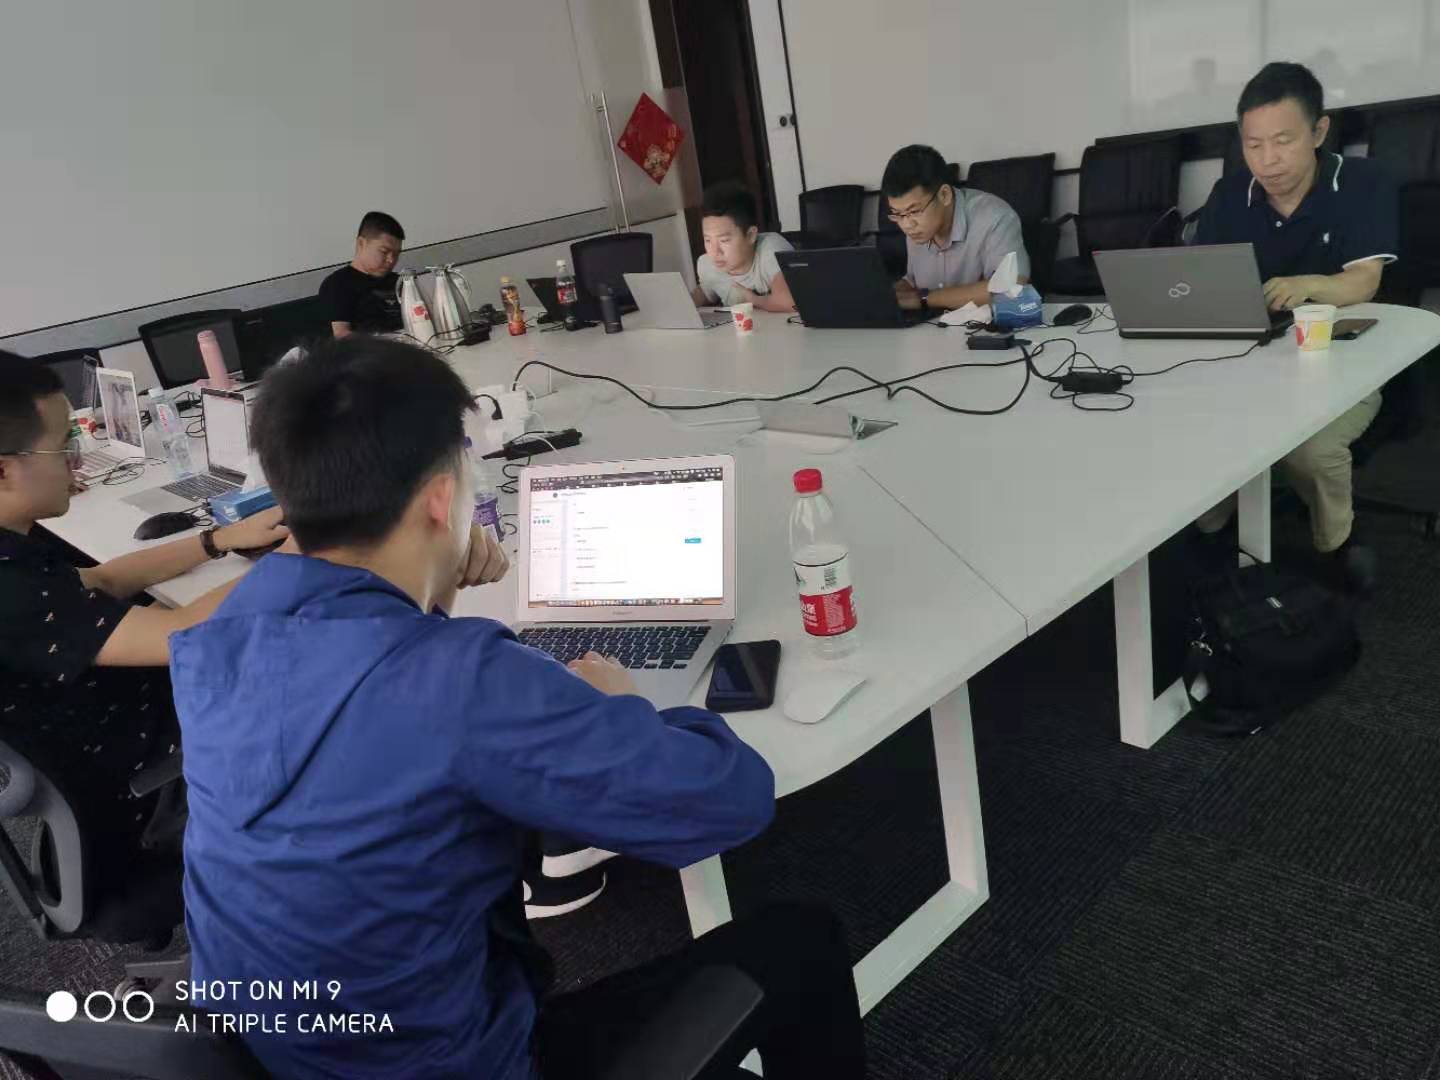 iS-RPA 技术认证培训 - 上海 20190711-0712 班 - 培训完成